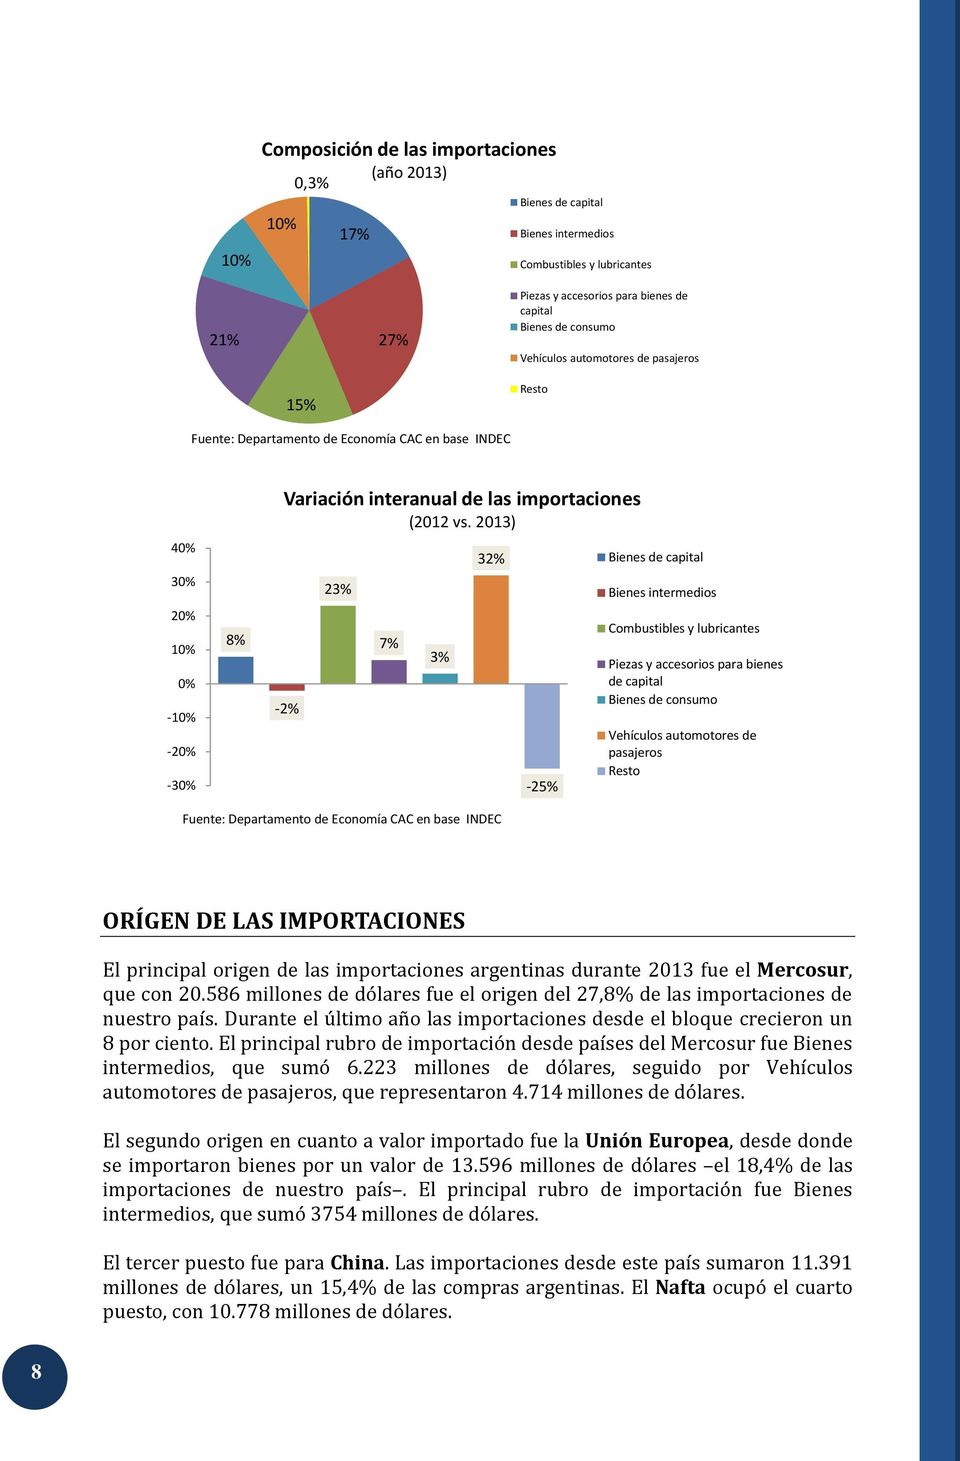 2013) -2% 23% 7% 3% 32% -25% Bienes de capital Bienes intermedios Combustibles y lubricantes Piezas y accesorios para bienes de capital Bienes de consumo Vehículos automotores de pasajeros ORÍGEN DE